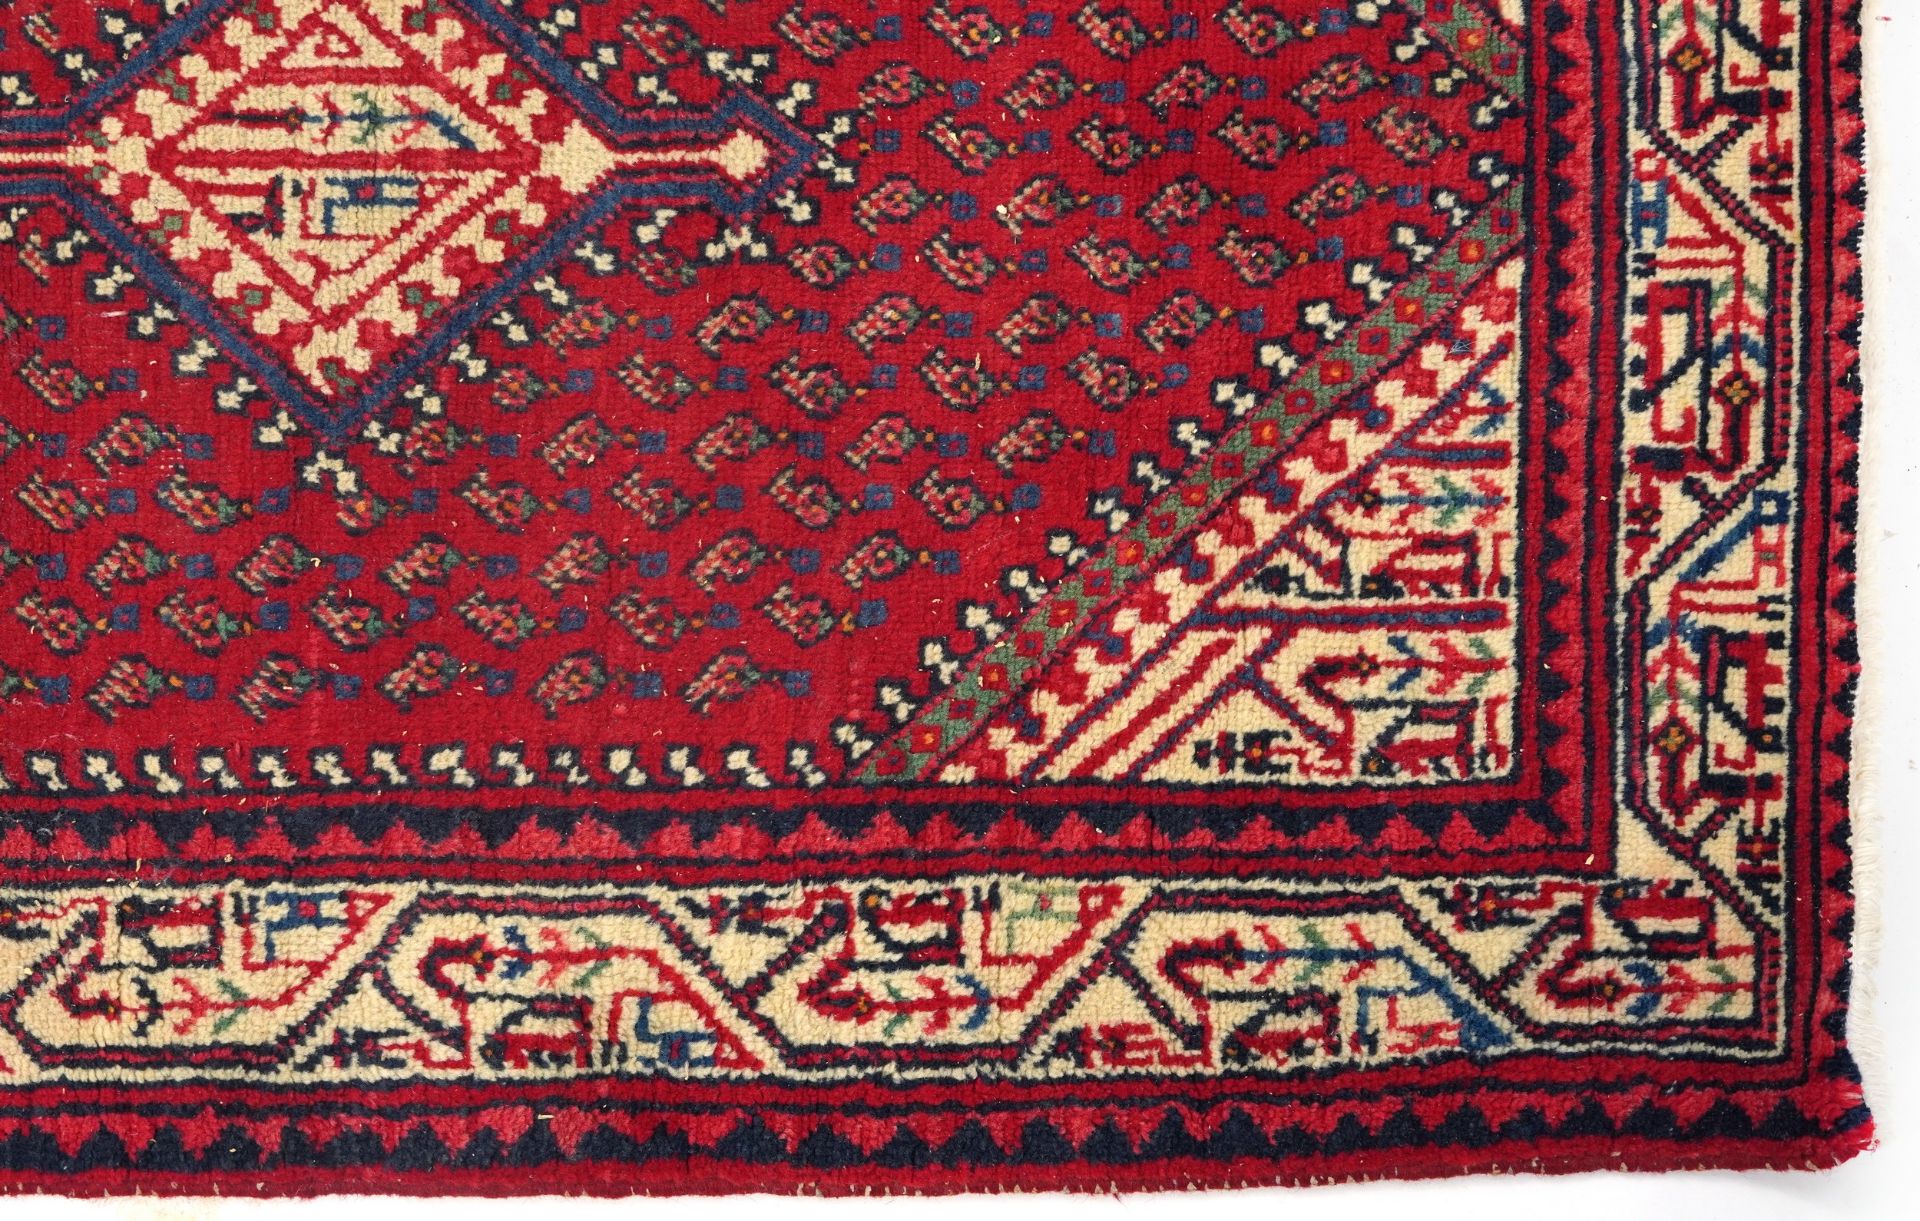 Rectangular Middle Eastern red ground rug, 155cm x 105cm - Bild 5 aus 6